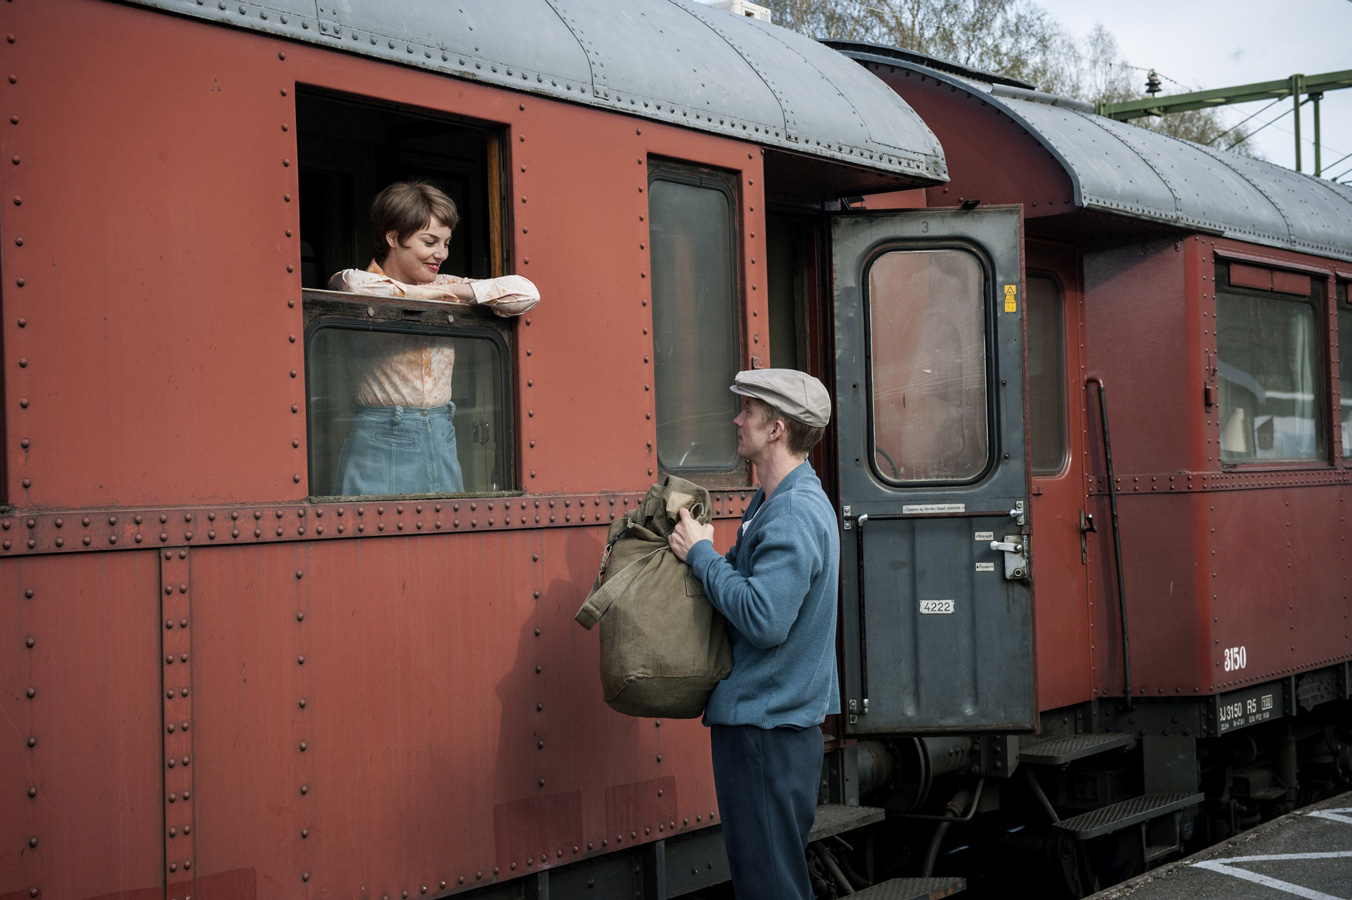 žena smějící se v&nbsp;okně vlaku, pod oknem muž v&nbsp;čepici držící batoh